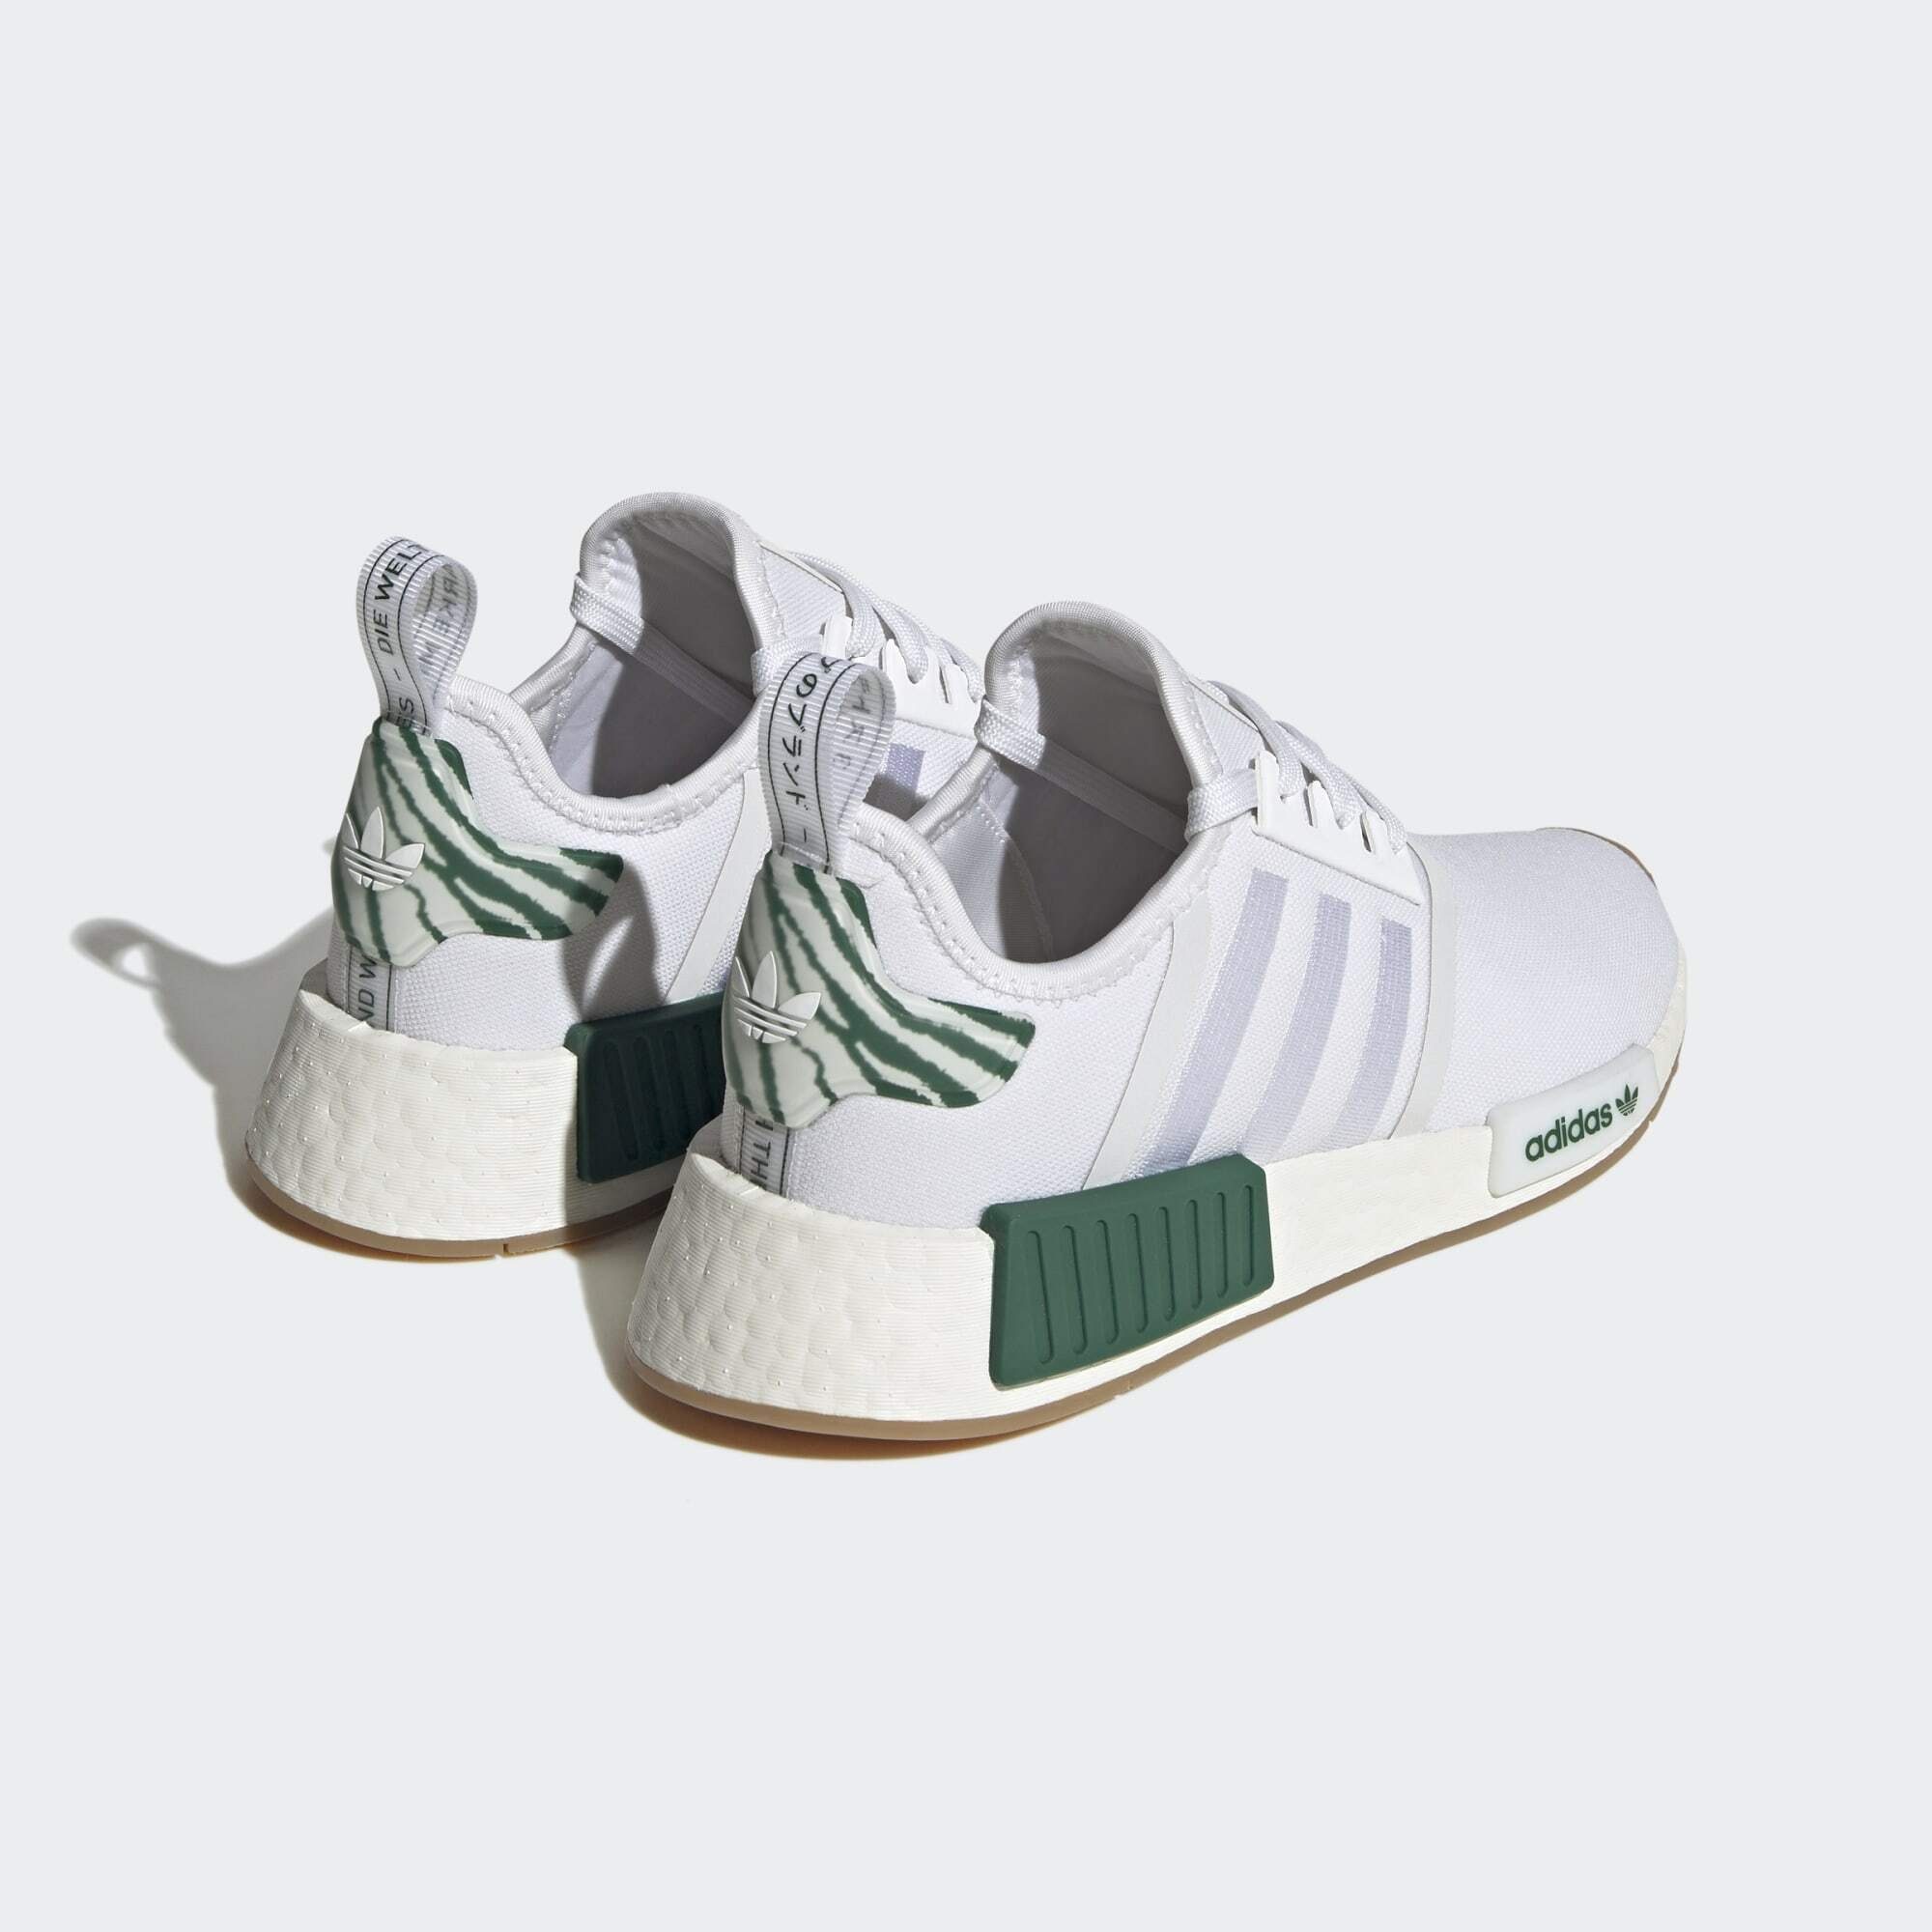 NMD_R1 SCHUH Originals adidas Sneaker